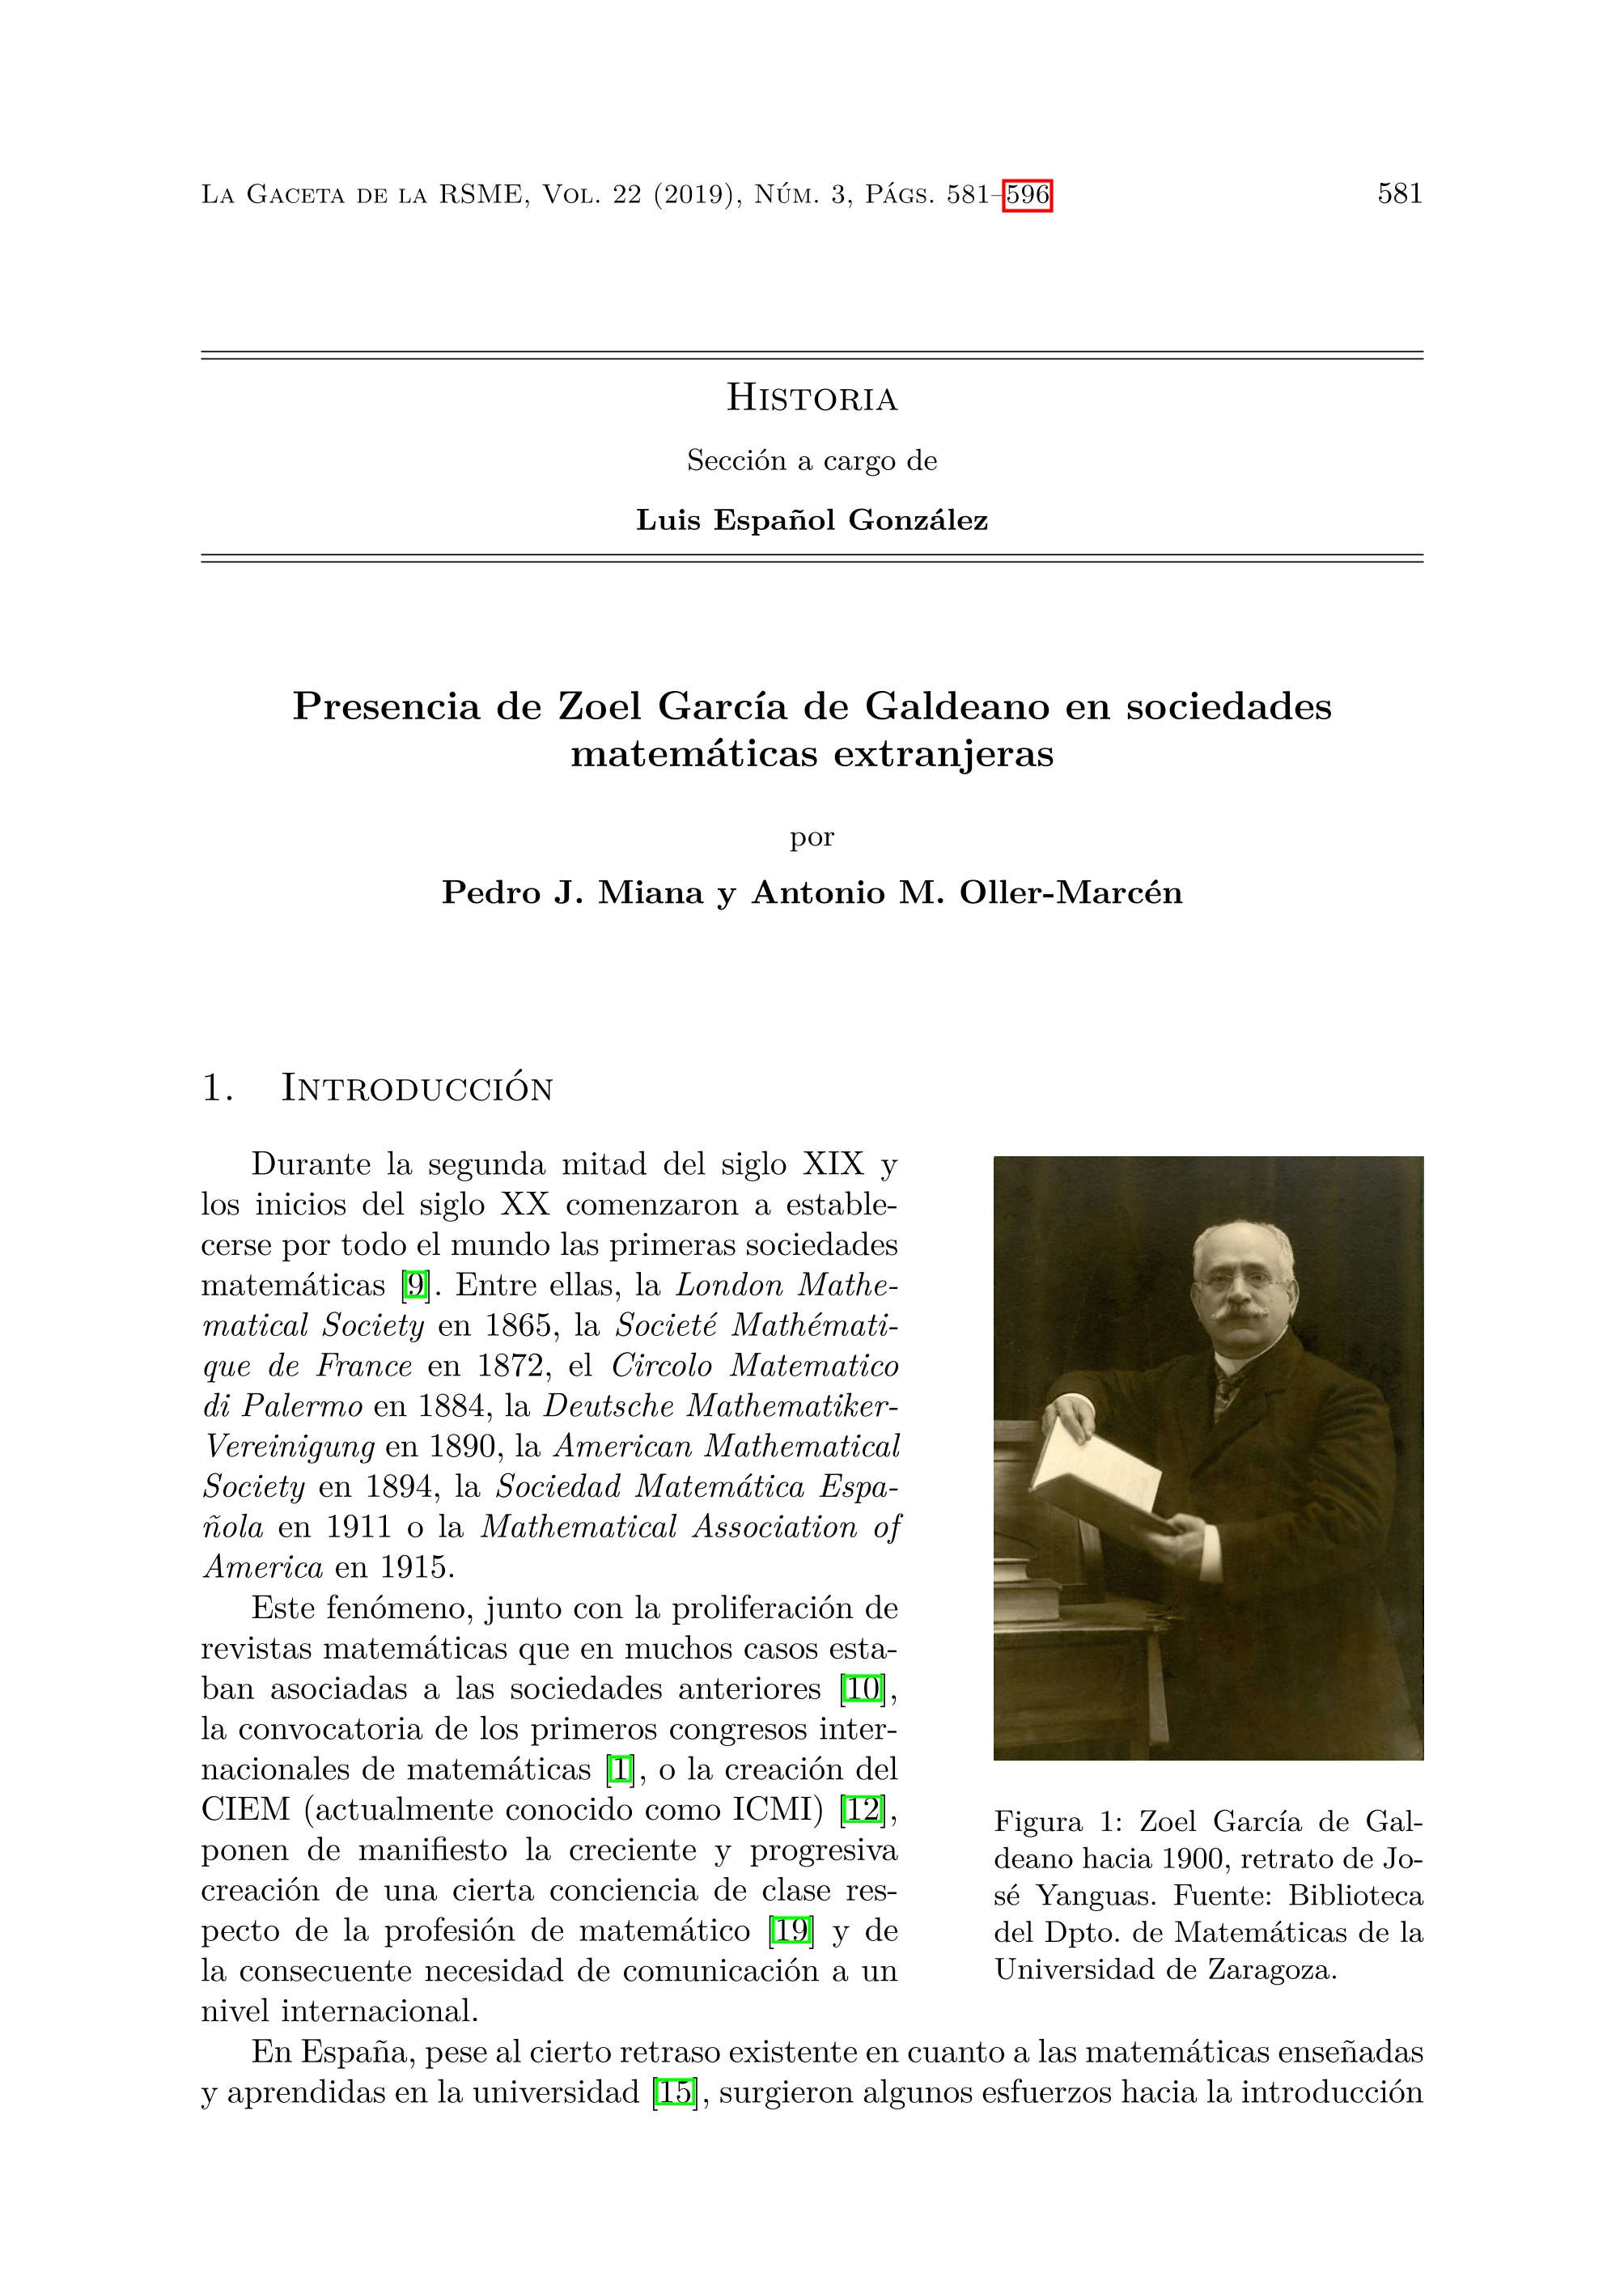 Presencia de Zoel García de Galdeano en sociedades matemáticas extranjeras